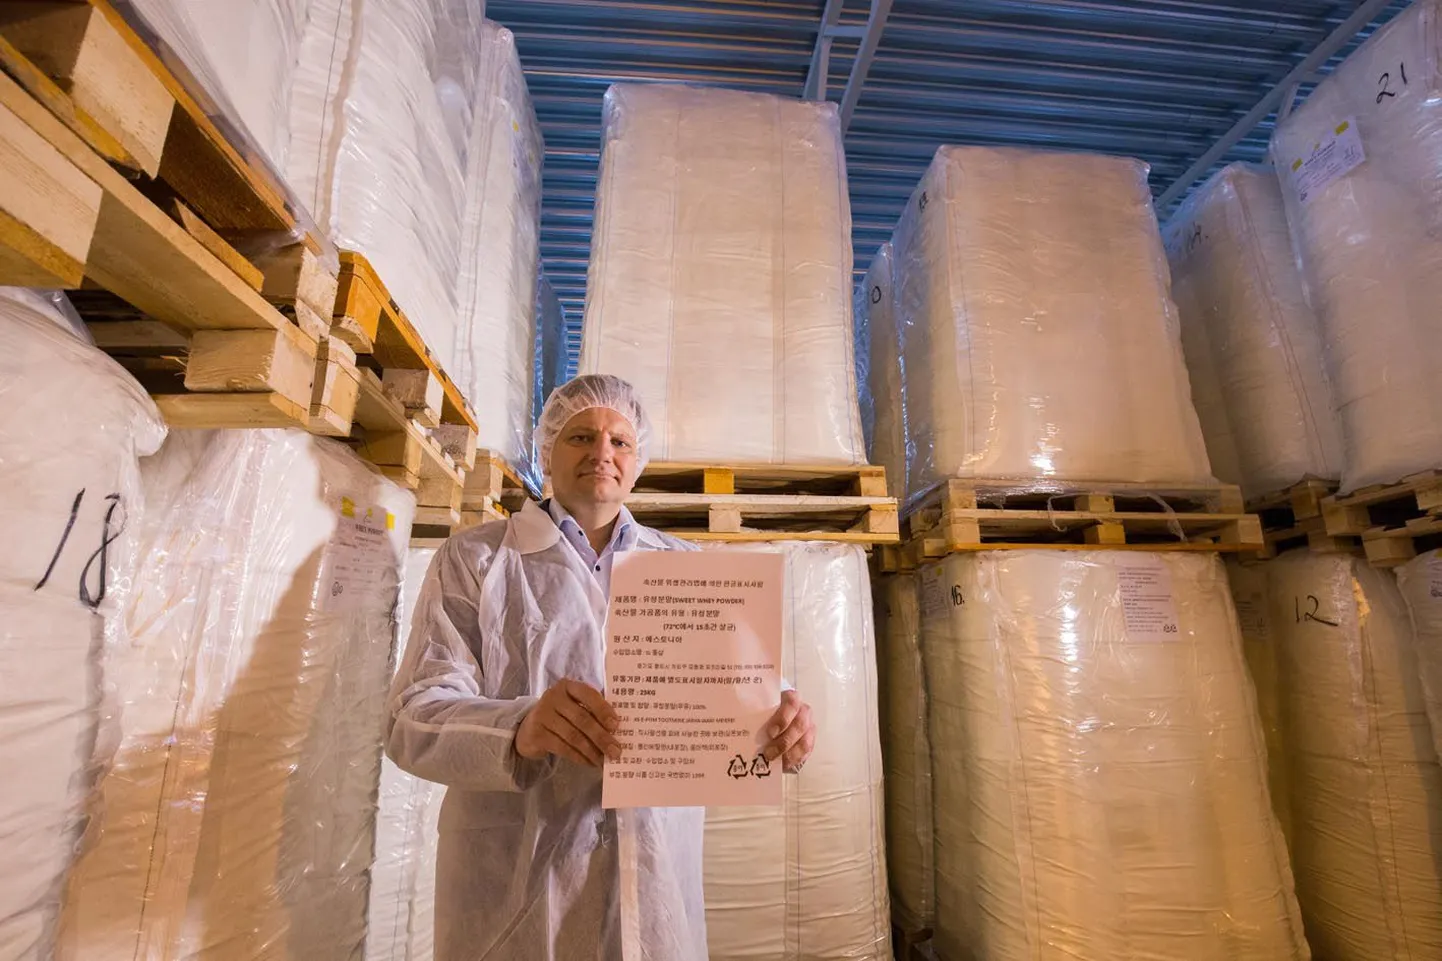 Eesti piimaliidu ja E-Piima juhatuse esimees Jaanus Murakas rõõmustab, et juba üle aasta kleebitakse tootepakenditele üha rohkem hieroglüüfkirjas silte, ainuüksi Gouda juustu müüb ettevõte Jaapanisse 500 tonni.